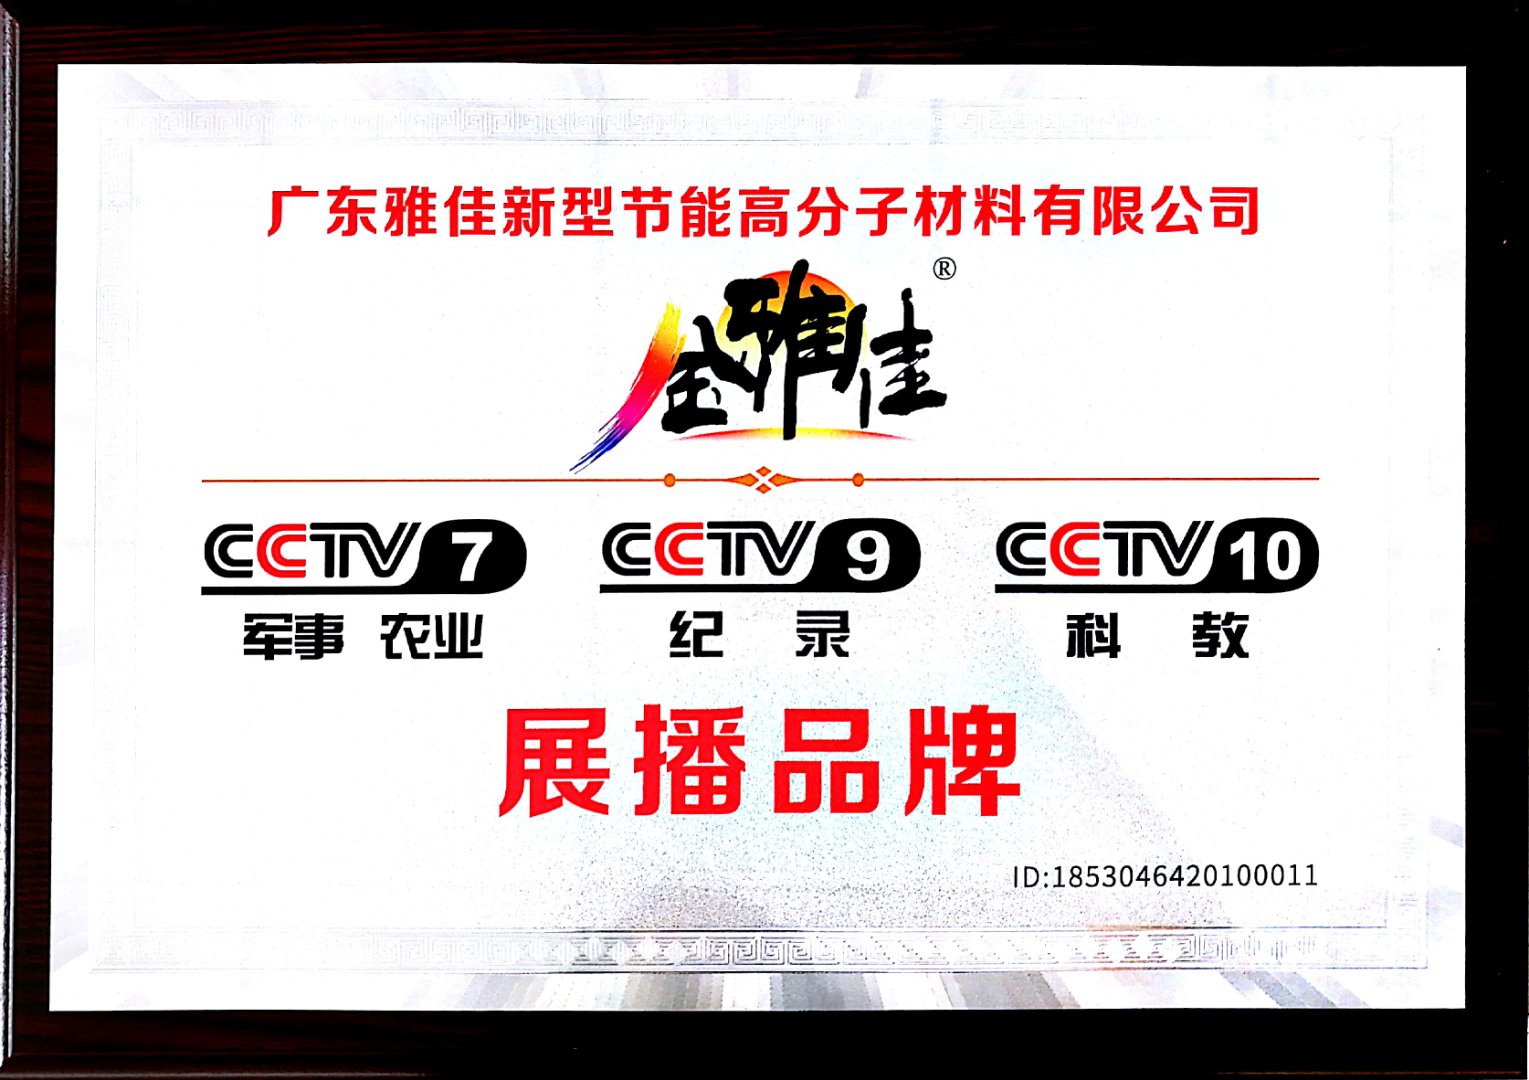 03 CCTV 7 9 10展播品牌.jpg